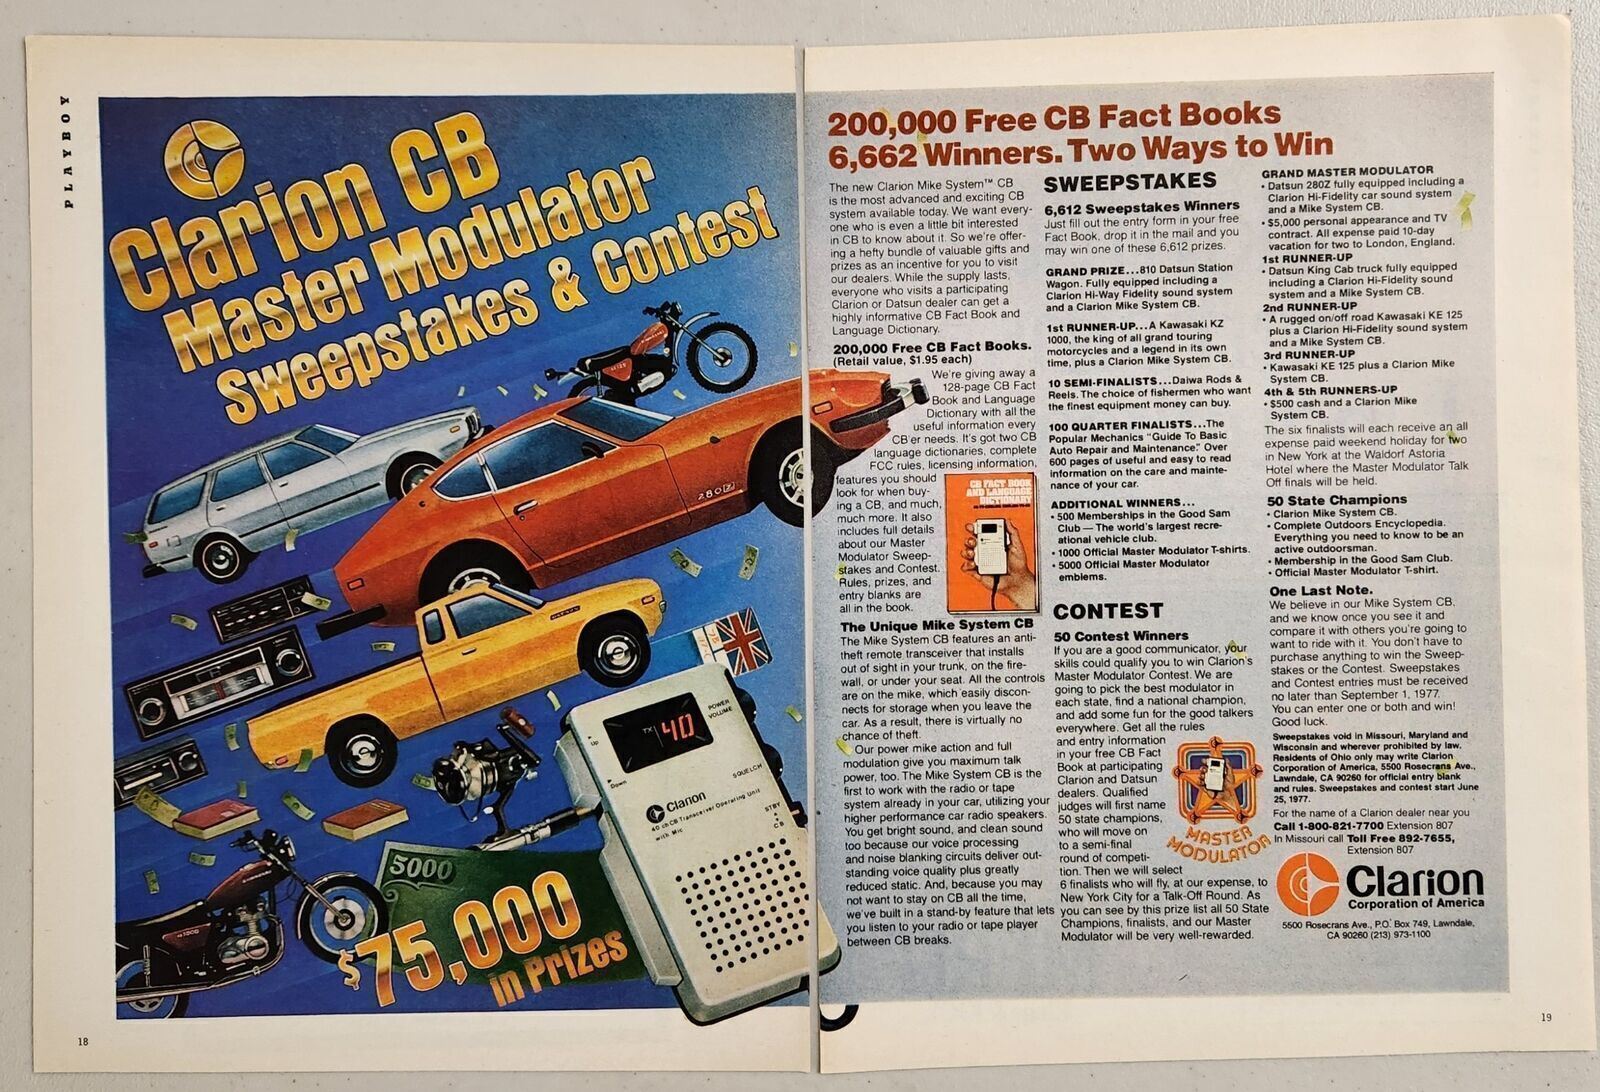 1977 Print Ad Clarion CB Radio Contest 3 Datsun Prizes Lawndale,California